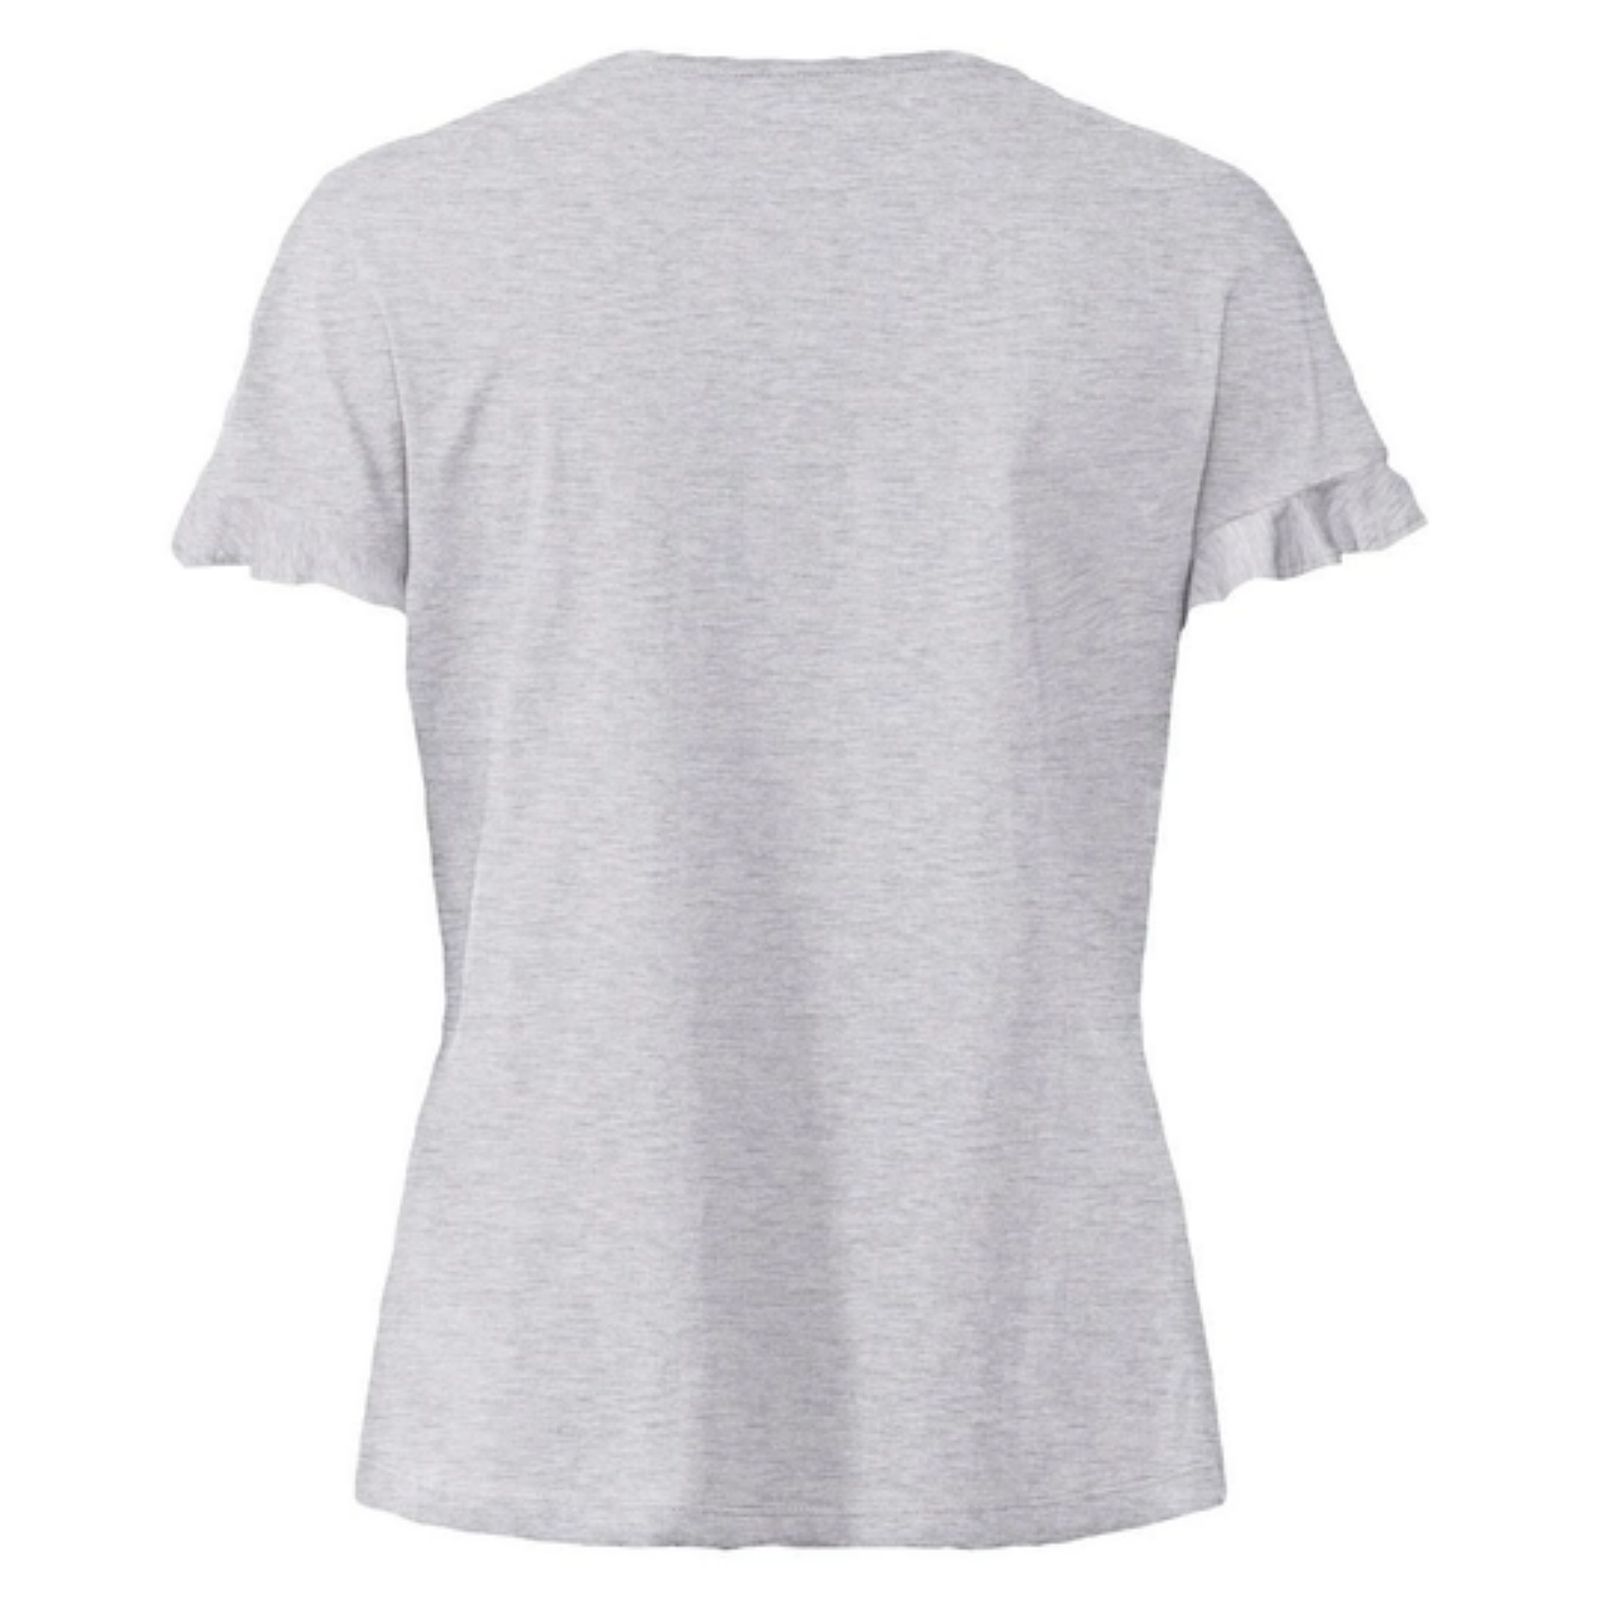 ست تی شرت و شلوارک زنانه اسمارا مدل 2023 -  - 3